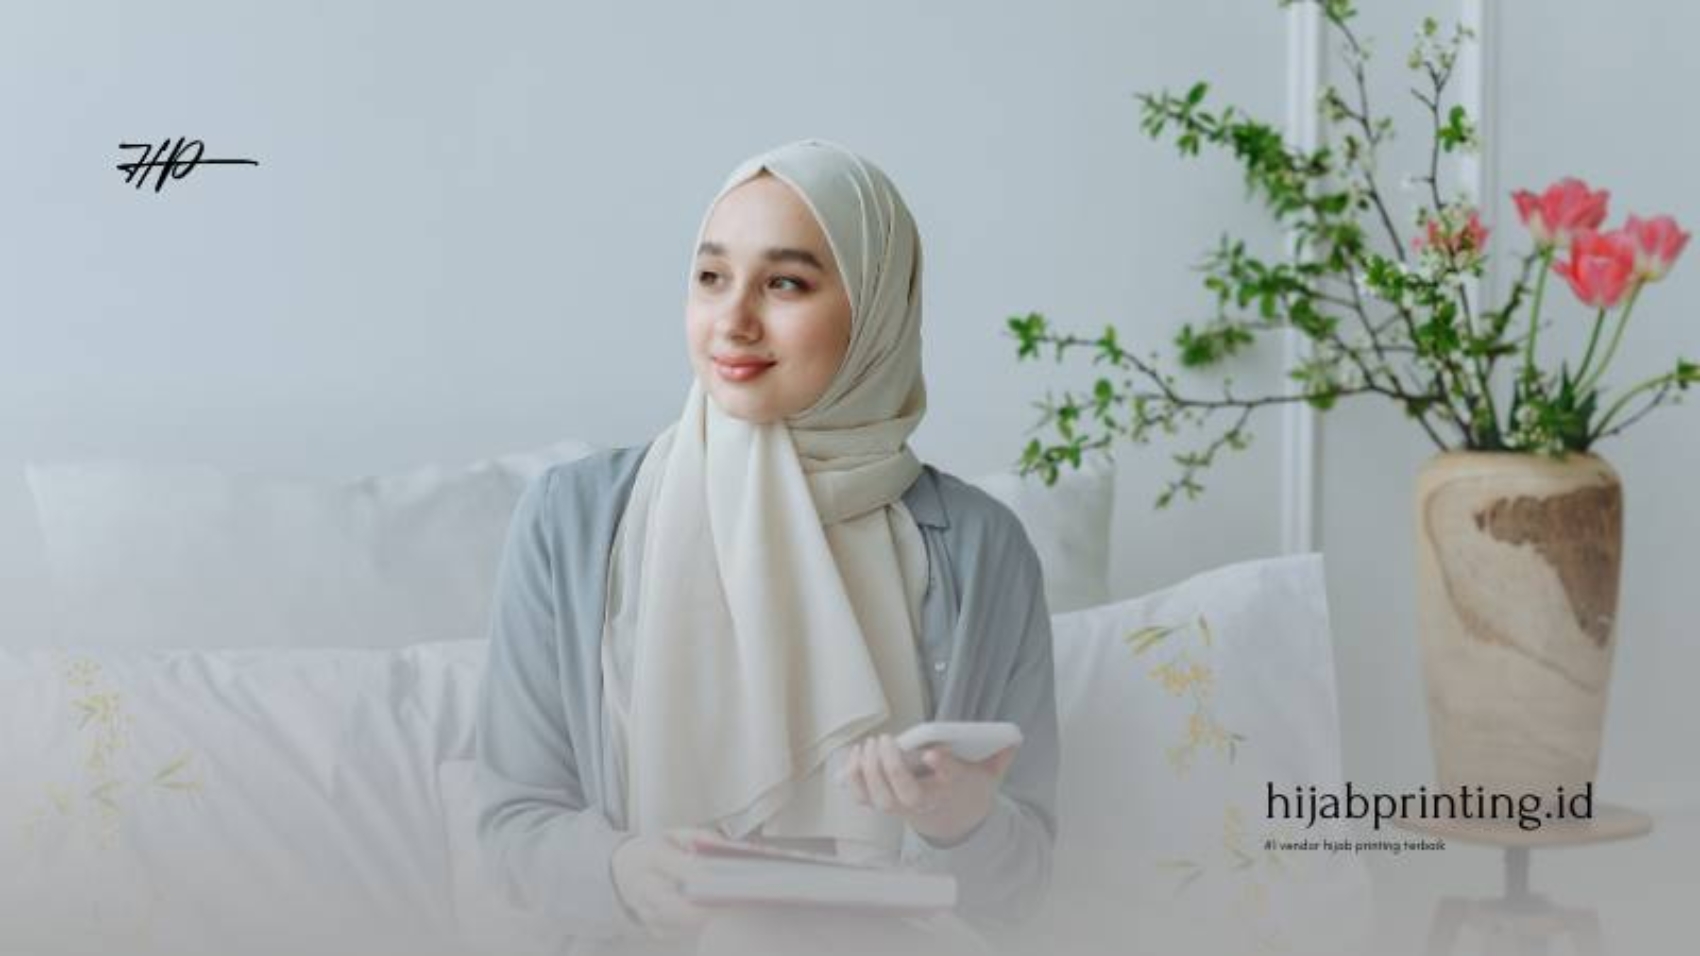 Bisnis Hijab Printing - Menyulam Kecantikan dalam Era Digital (1)